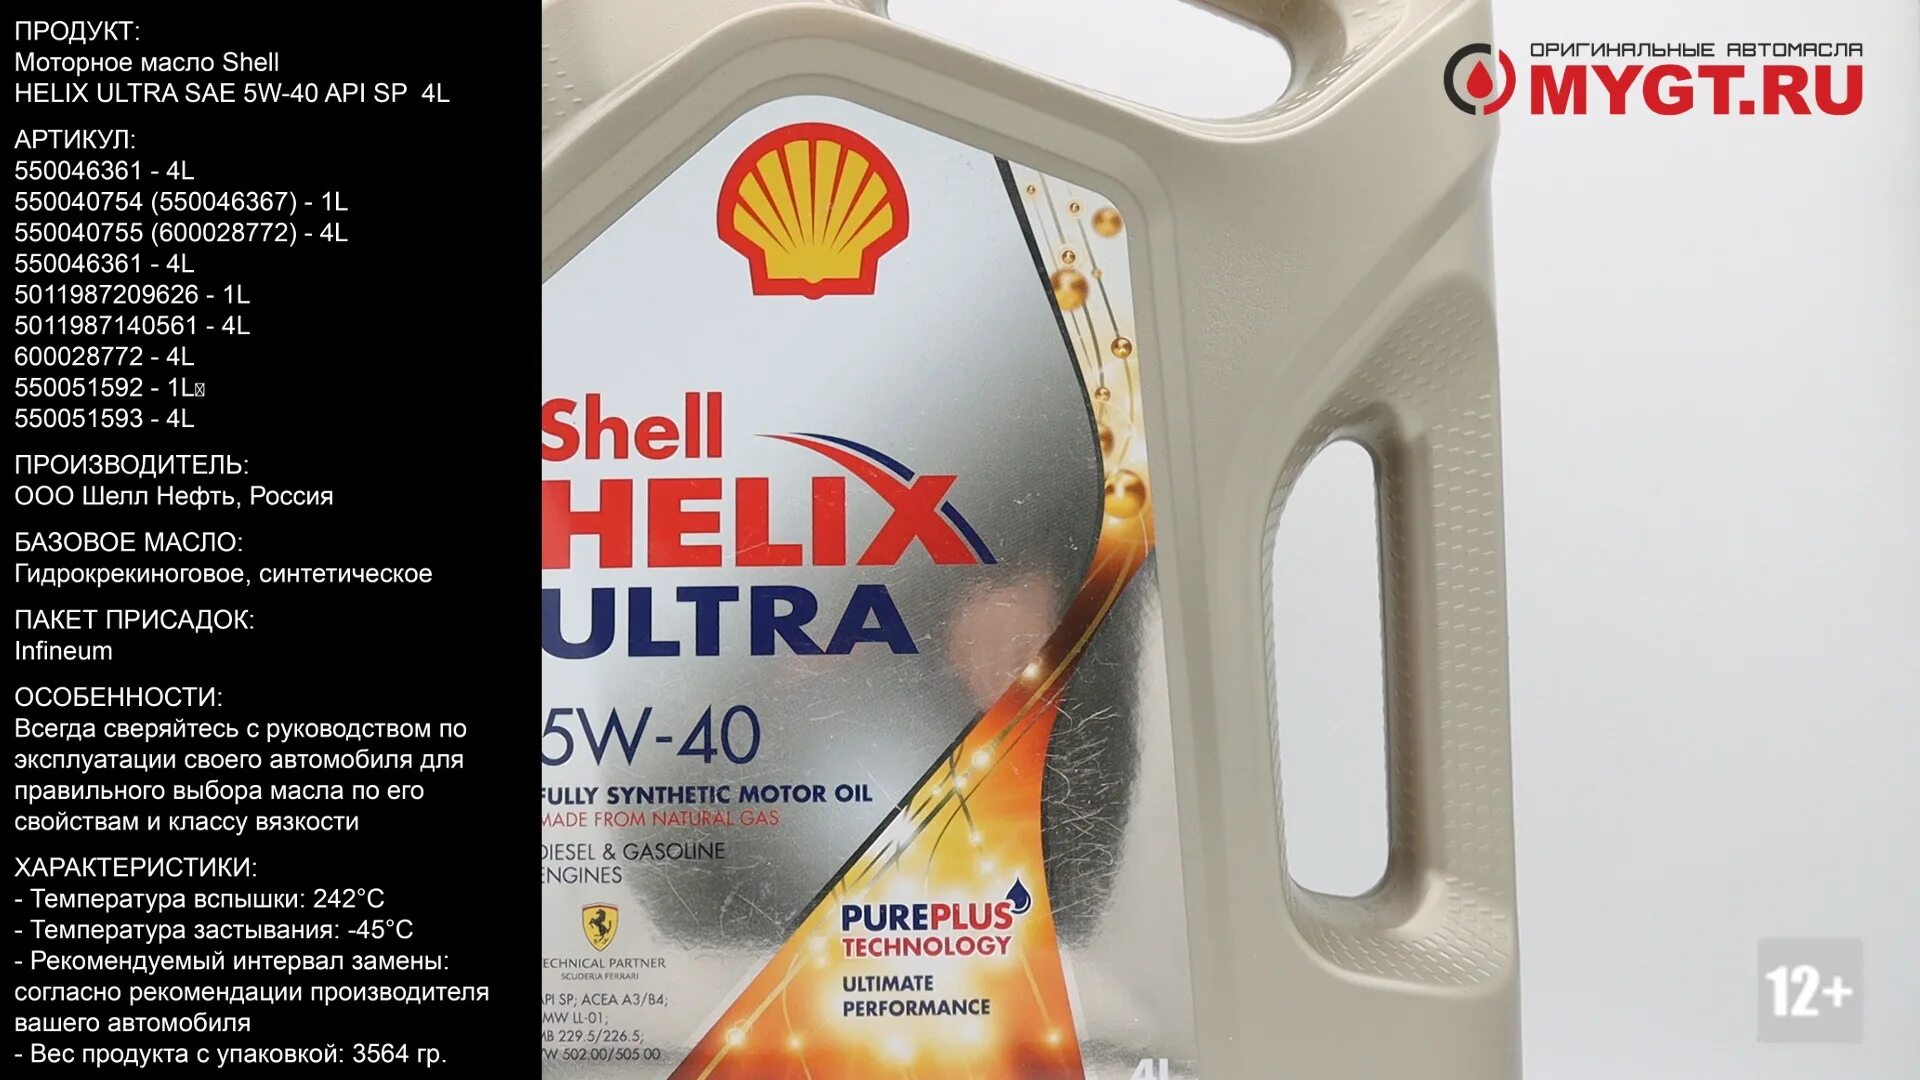 Моторное масло Helix Ultra 5w-40 4l Shell 550051593. Shell Helix Ultra 5w30 API SL a3/b4. Shell 550040637. 550046387 Shell Helix Ultra 5w-30 4l.